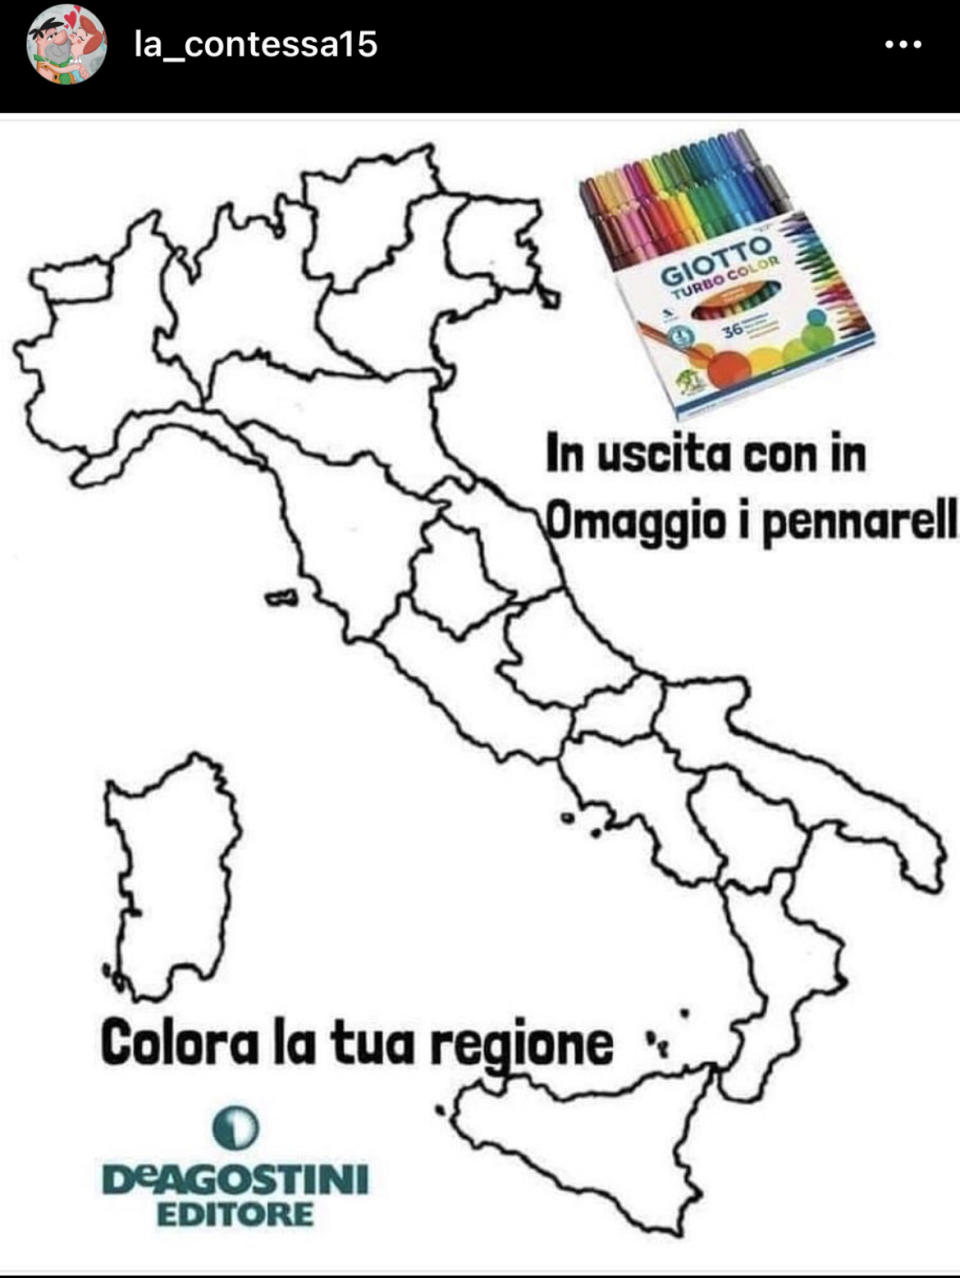 Il nuovo Dpcm che ha diviso l'Italia in 3 aree colorate in base al livello di rischio sanitario ha scatenato una pioggia di meme sui social network. Dai riferimenti a cartoni animati, film e programmi televisivi fino a un certo livello di confusione su quale sia il colore della propria Regione, ecco le immagini più divertenti.